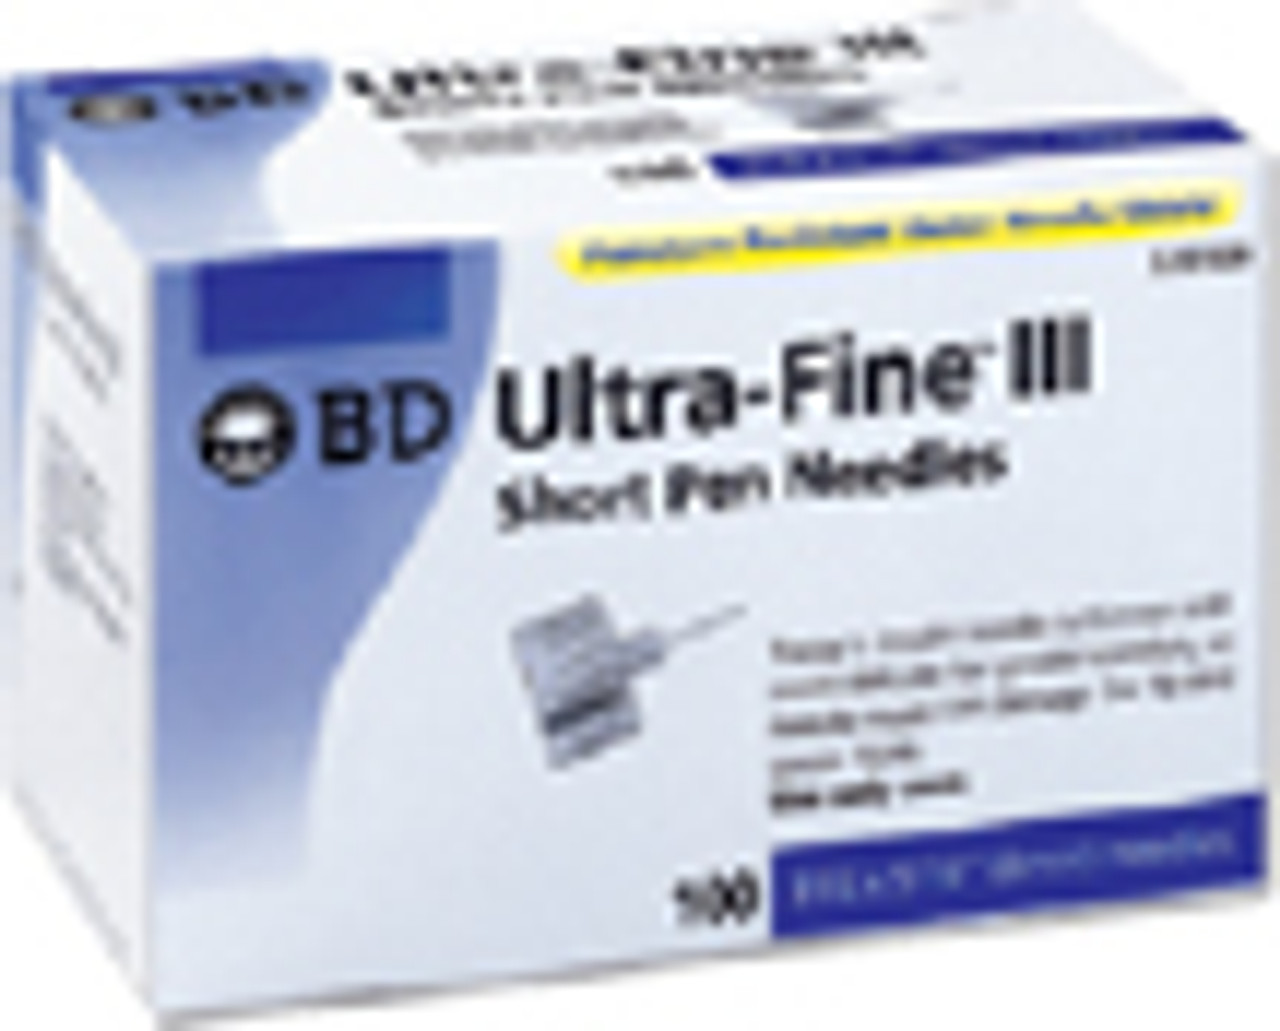 BD Ultra-Fine Short Pen Needles 8mm x 31G, 100/box — Mountainside